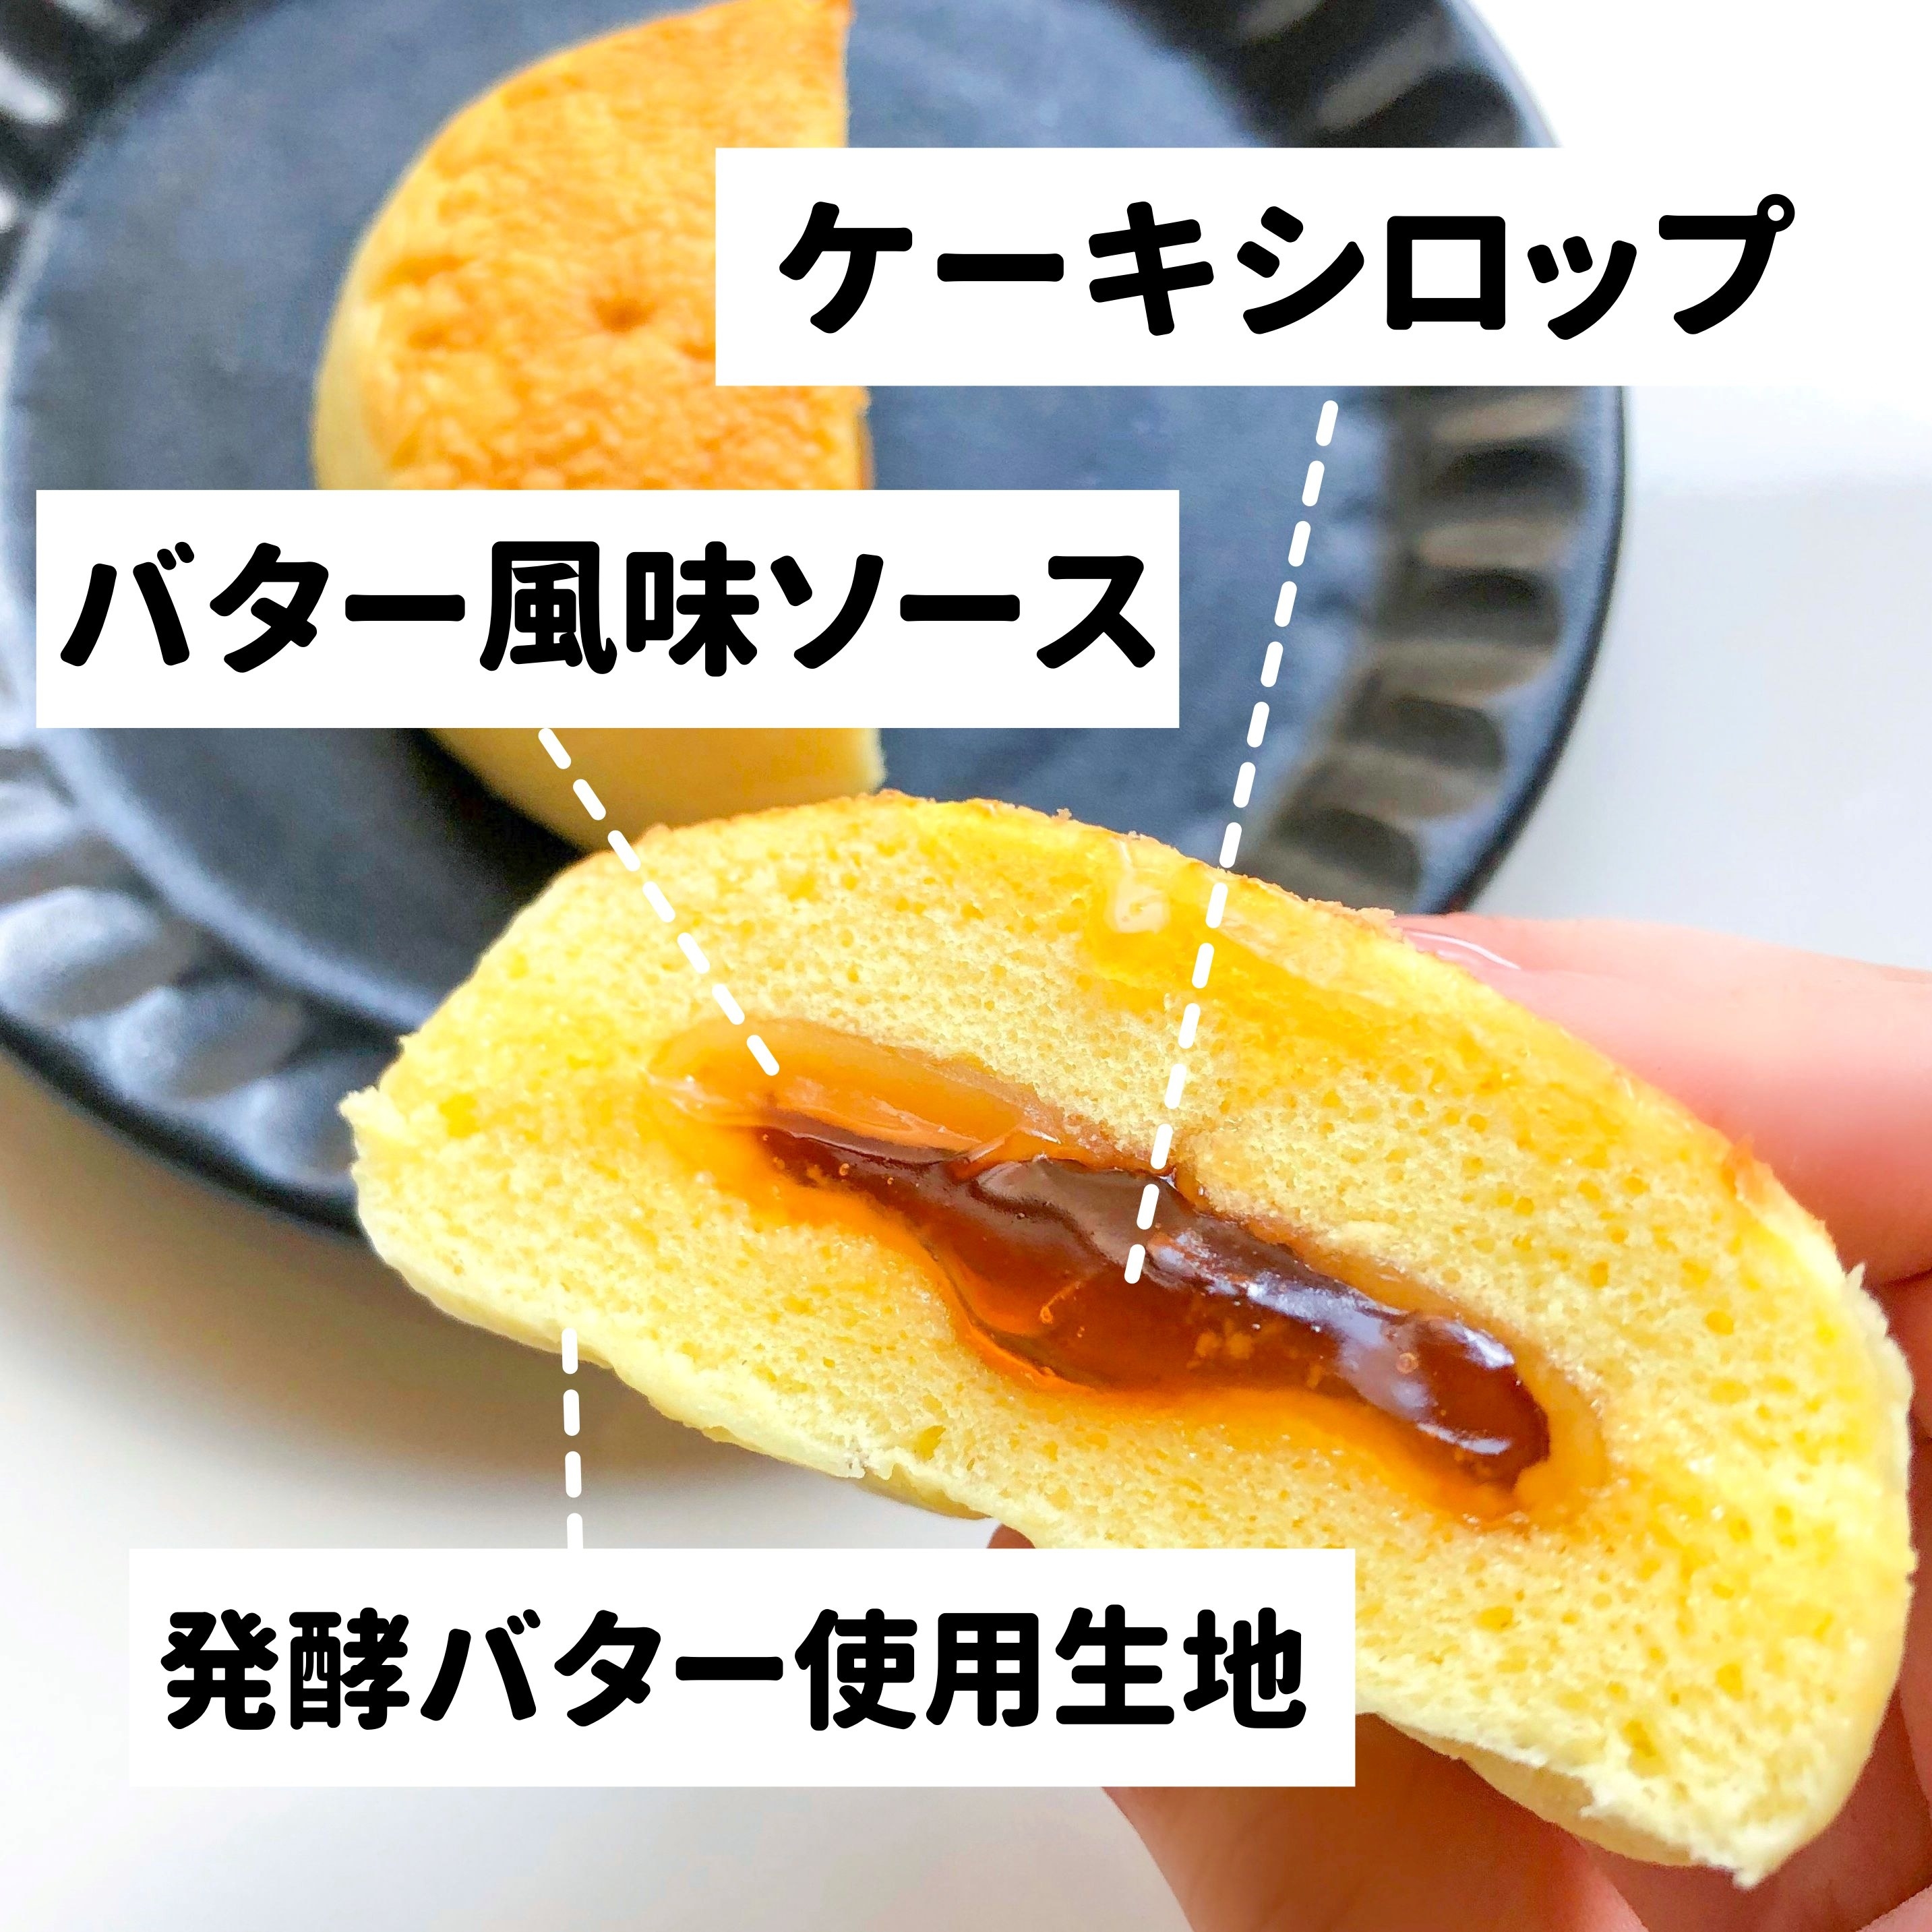 ファミリーマートのオススメのスイーツ「森永製菓監修 バター香る ホットケーキまん」